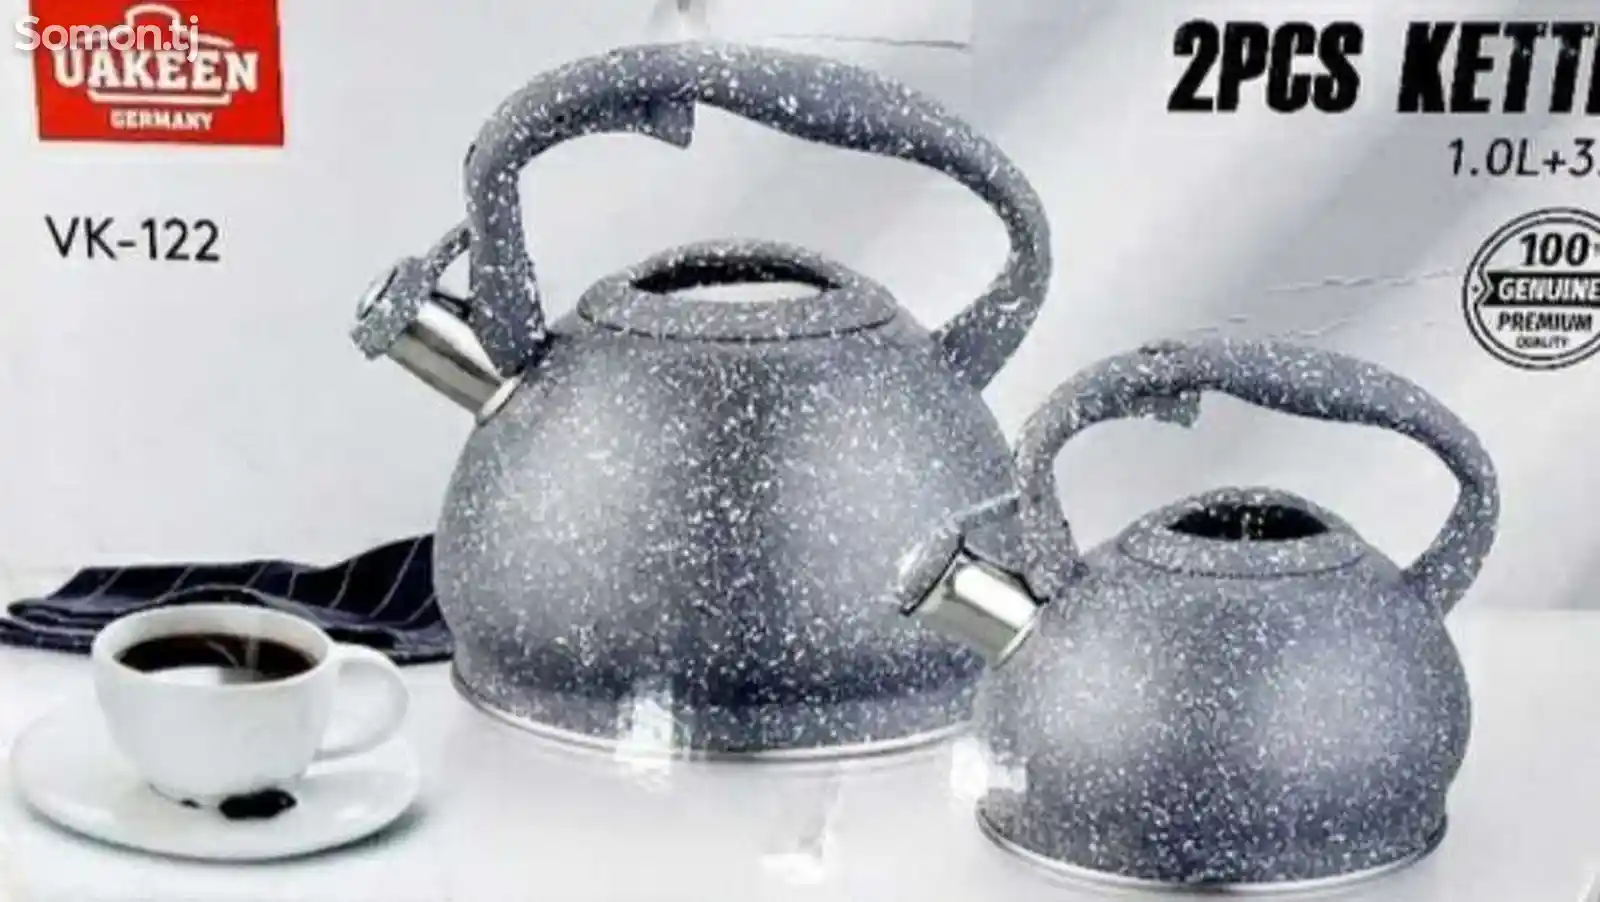 Набор чайников Uakeen VK-122